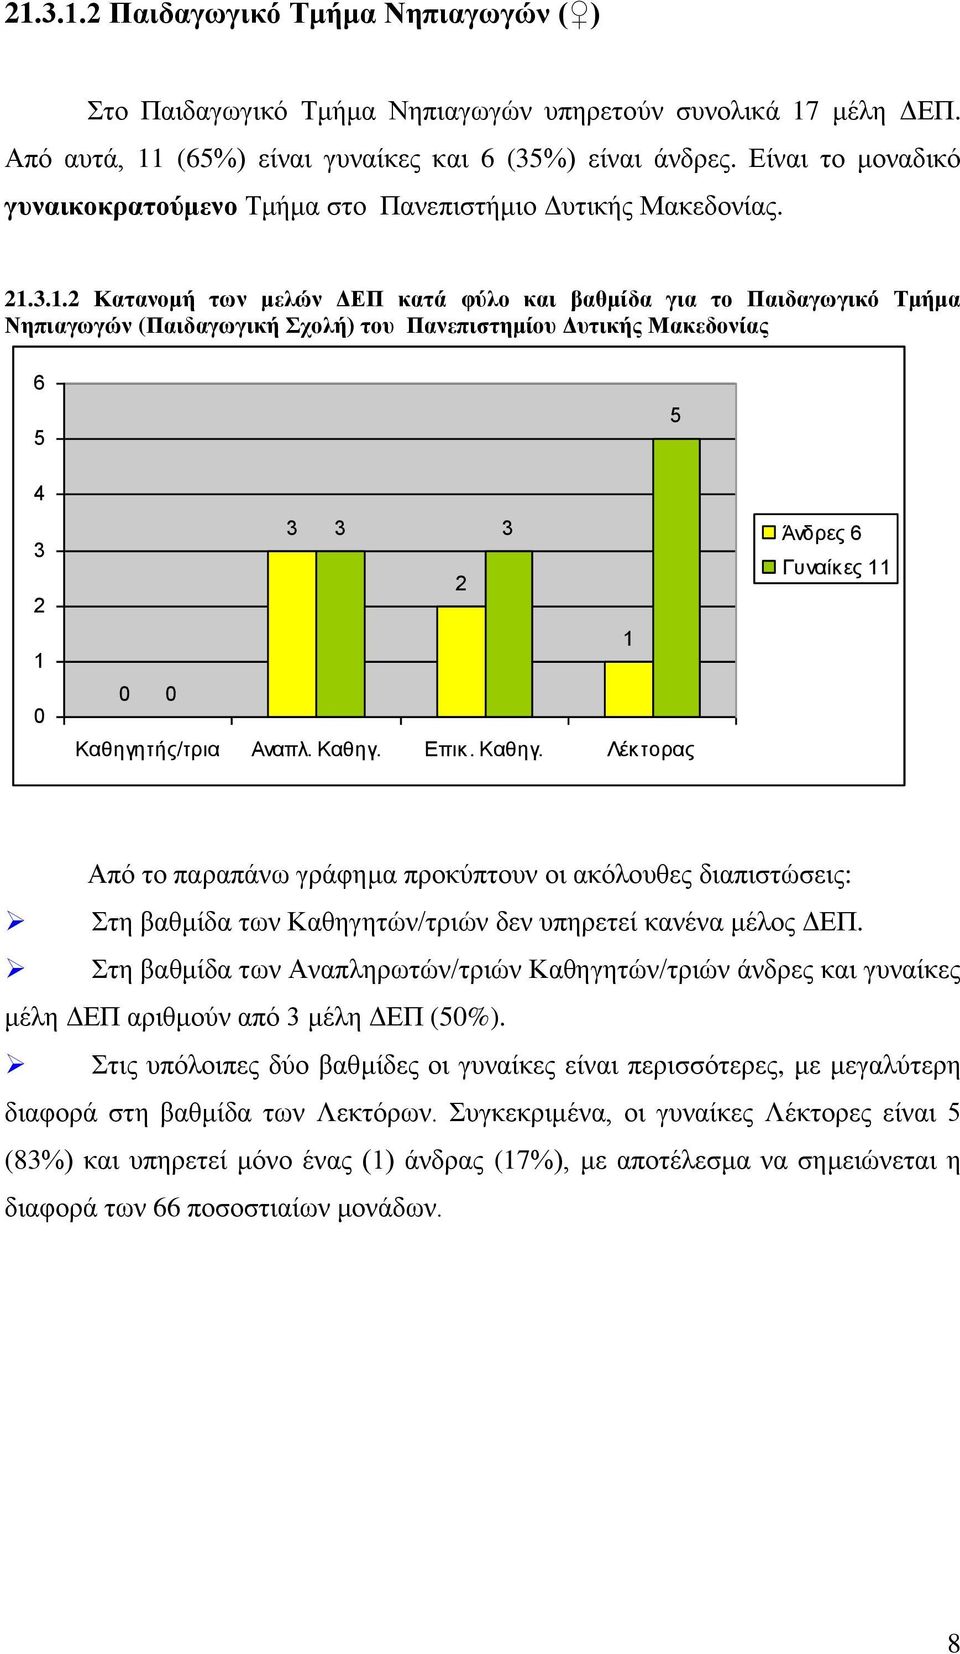 ... Κατανομή των μελών ΔΕΠ κατά φύλο και βαθμίδα για το Παιδαγωγικό Τμήμα Νηπιαγωγών (Παιδαγωγική Σχολή) του Πανεπιστημίου Δυτικής Μακεδονίας Άνδρες Γυναίκες Από το παραπάνω γράφημα προκύπτουν οι